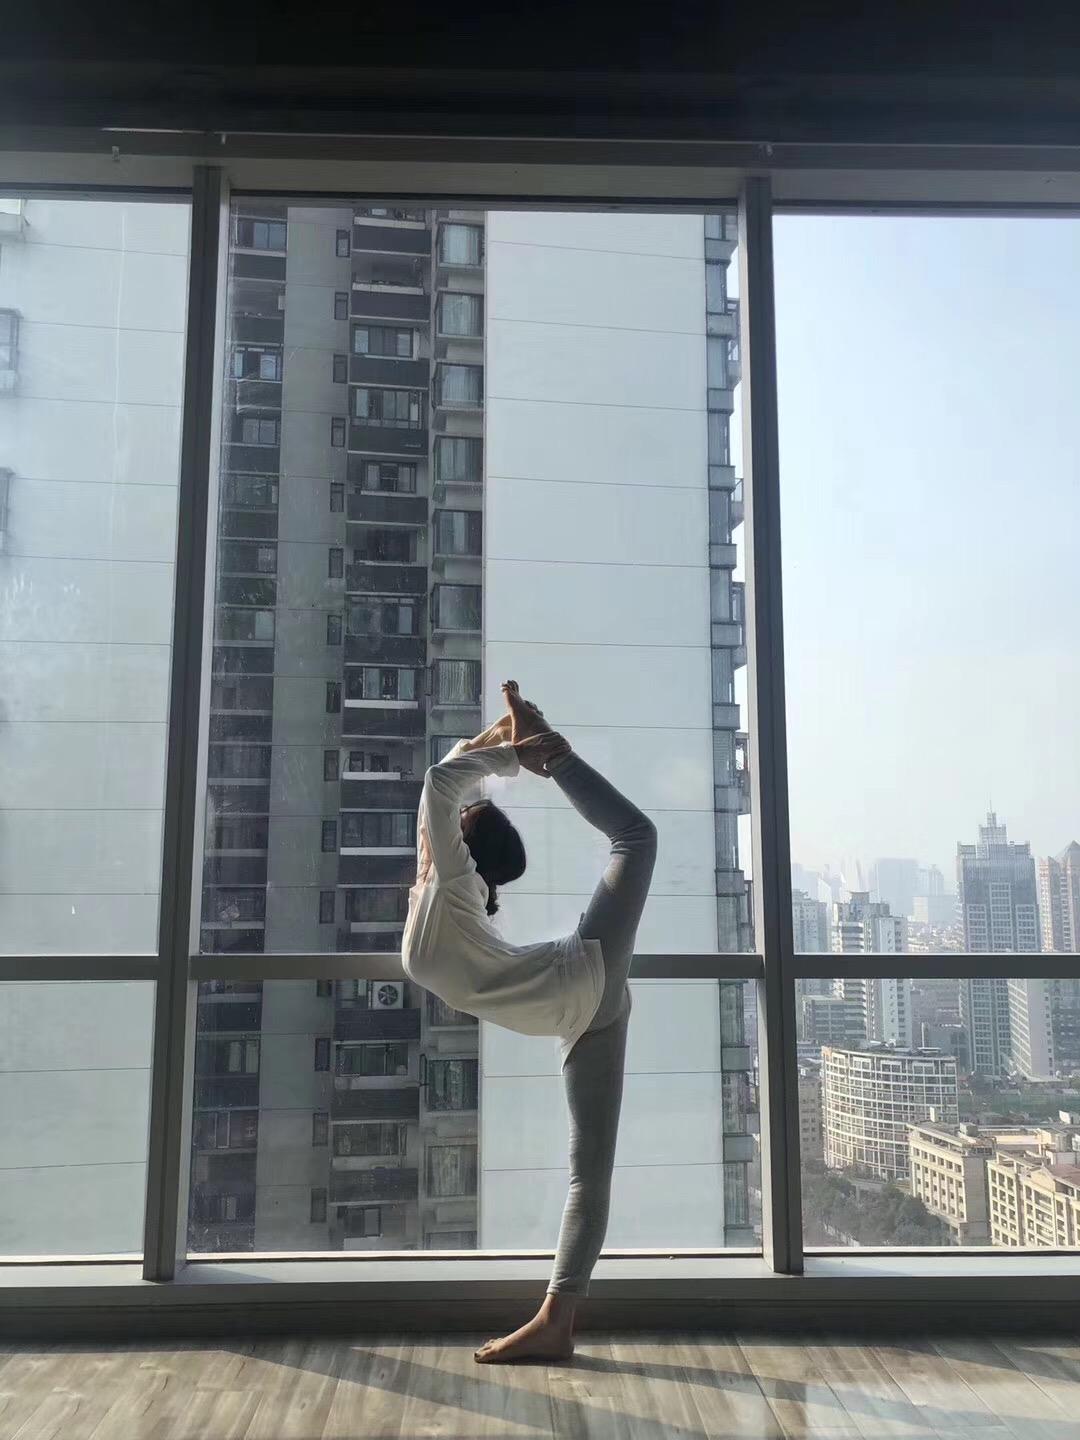 北京钢管舞学校 聚星